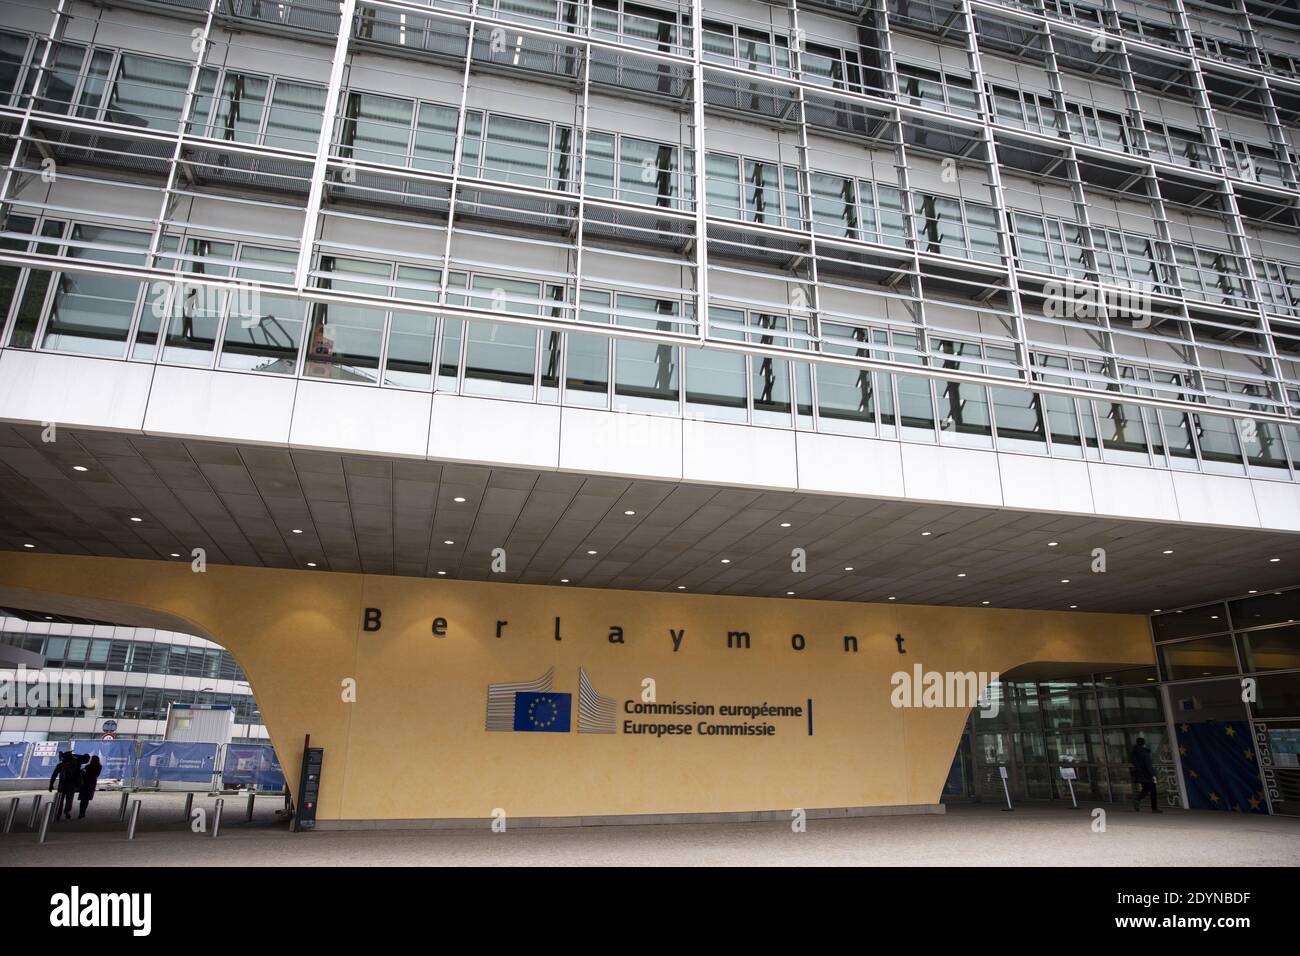 Datei-Foto vom 09/12/20 des Berlaymont-Gebäudes, dem Hauptsitz der Europäischen Kommission in Brüssel. Premierministerin Margaret Thatcher schwor, die Europäische Kommission in einen professionellen öffentlichen Dienst umzuwandeln, wie offizielle Archive zeigten. Stockfoto